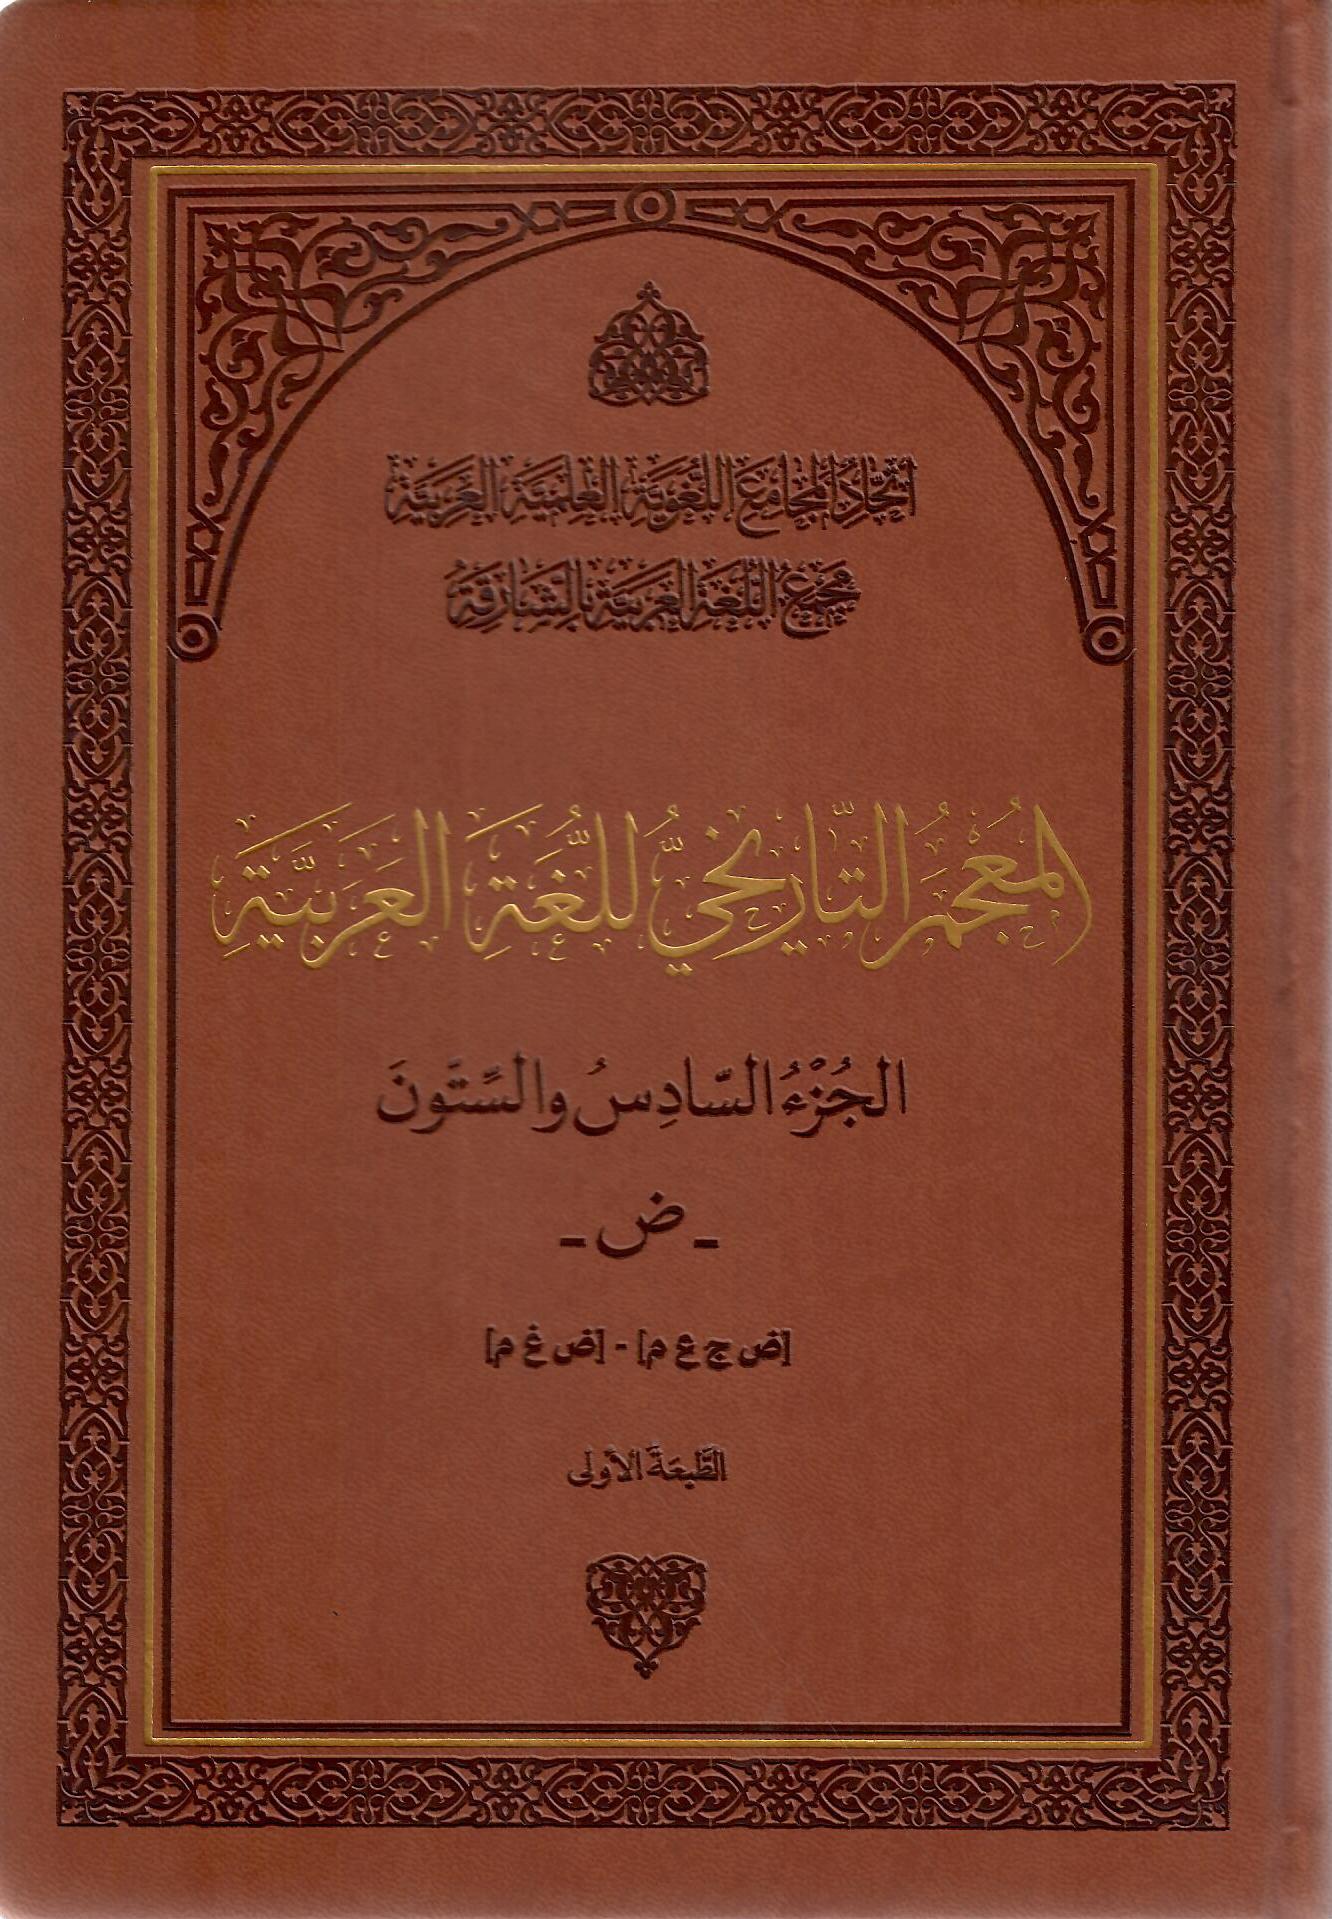 المعجم التاريخي للغة العربية الجزء السادس والستون